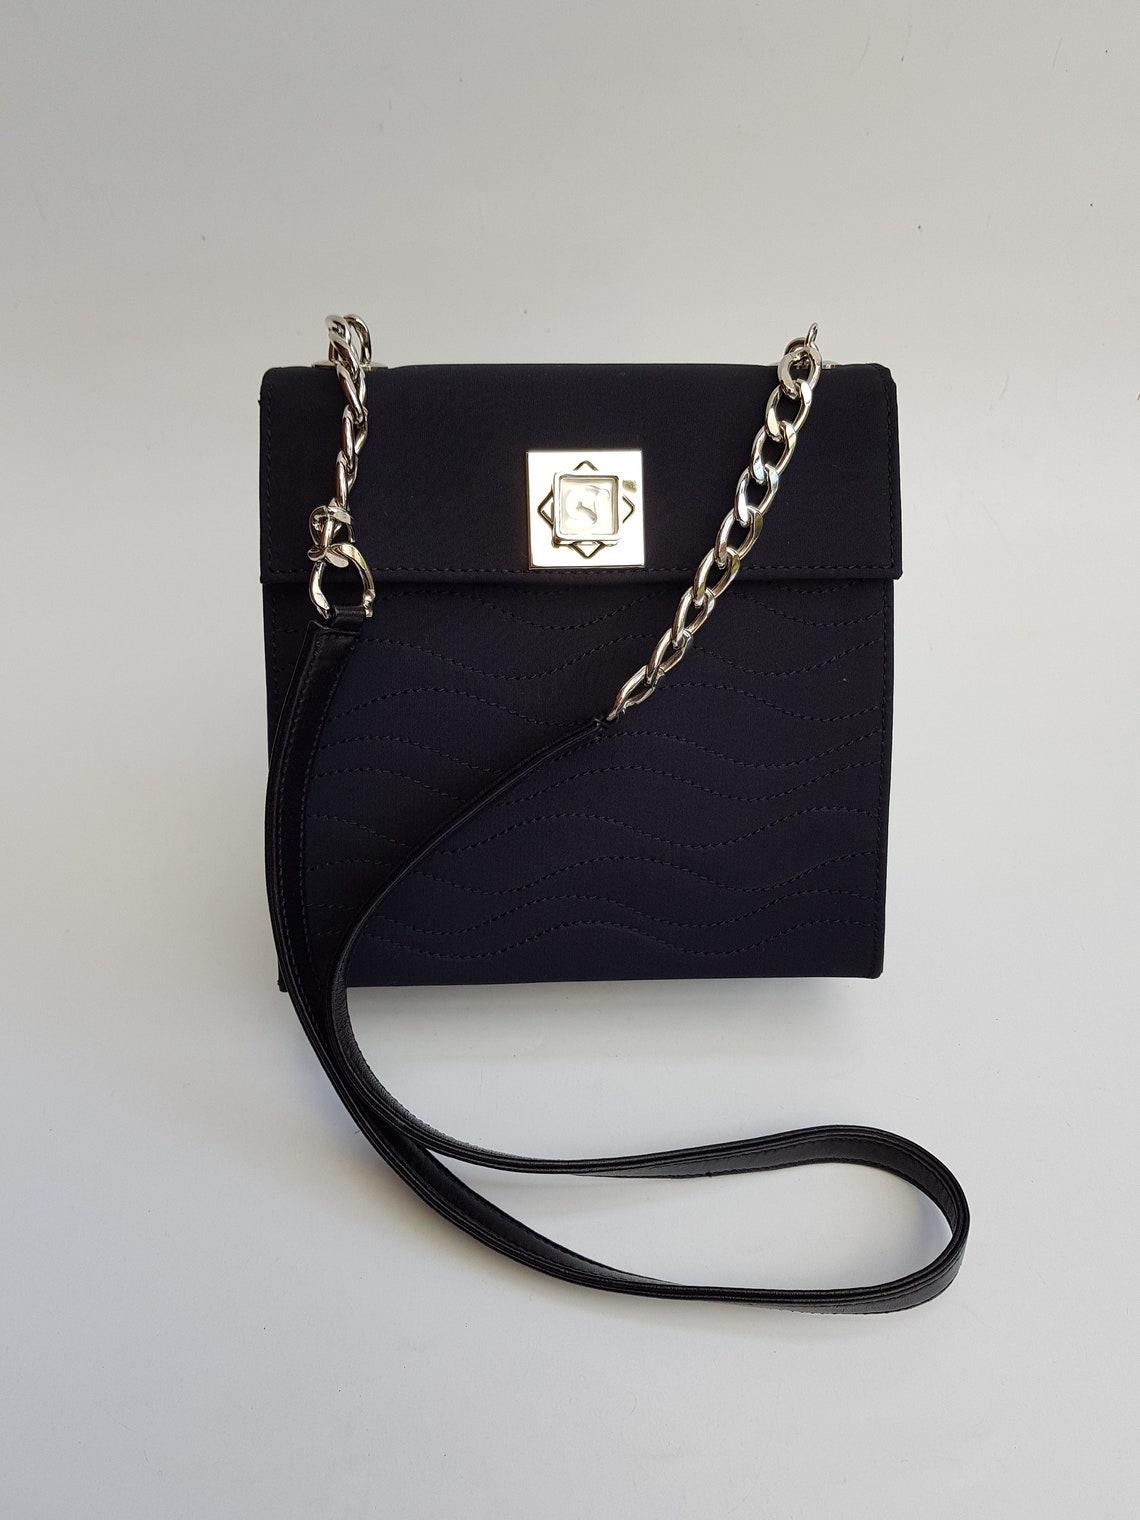 LALIQUE Bag. Lalique Vintage Black Shoulder Bag. Rare French | Etsy